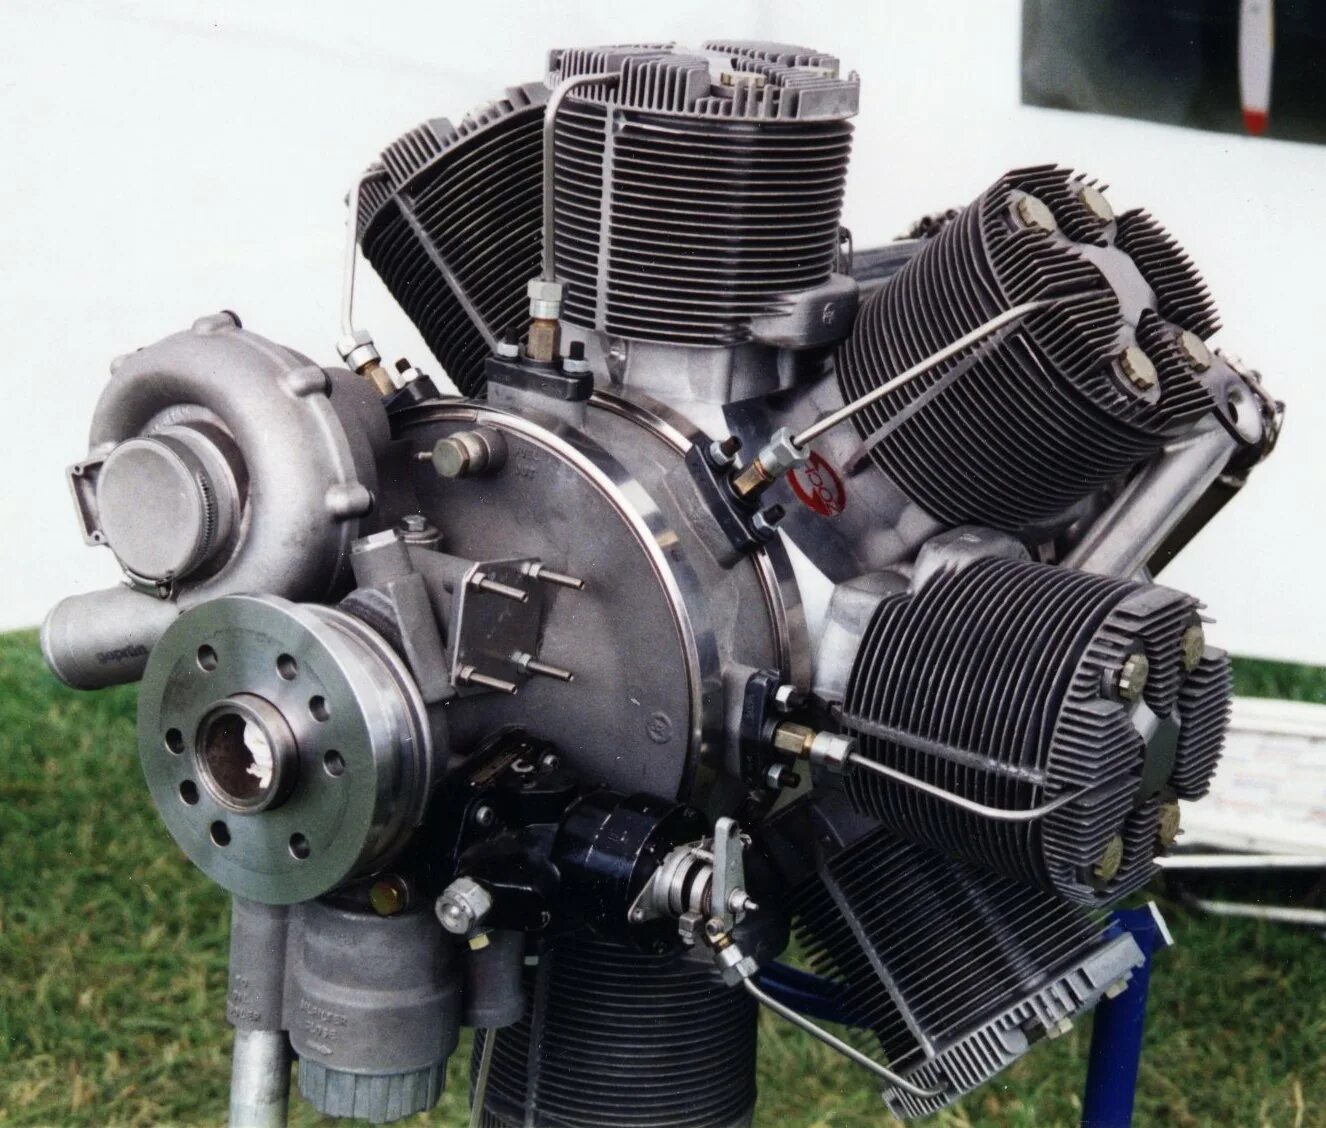 Купить двигатель орел. Двухтактный авиадизель м-305. Pratt & Whitney r5600 XBSAP. 56 Цилиндровый. DELTAHAWK Diesel aircraft engines. Анзани авиадвигатель.